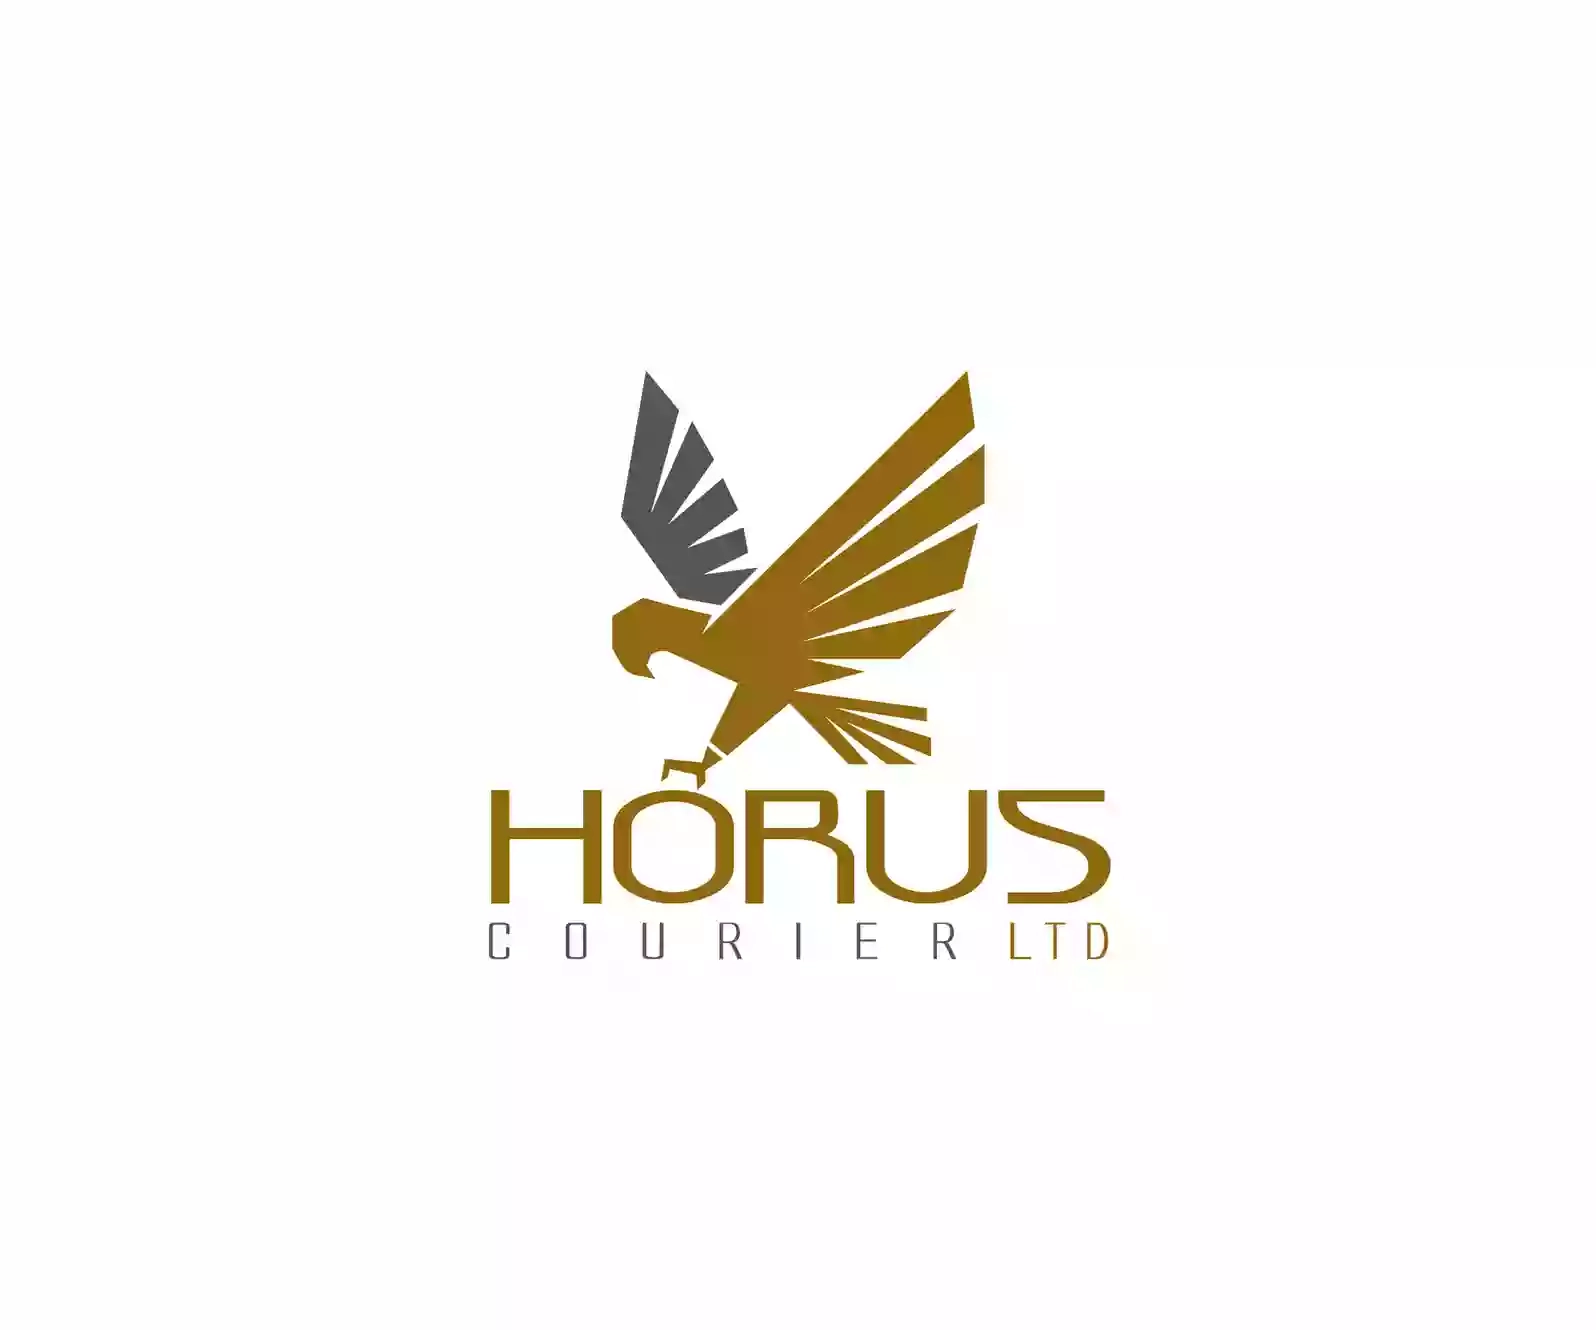 Horus Courier LTD